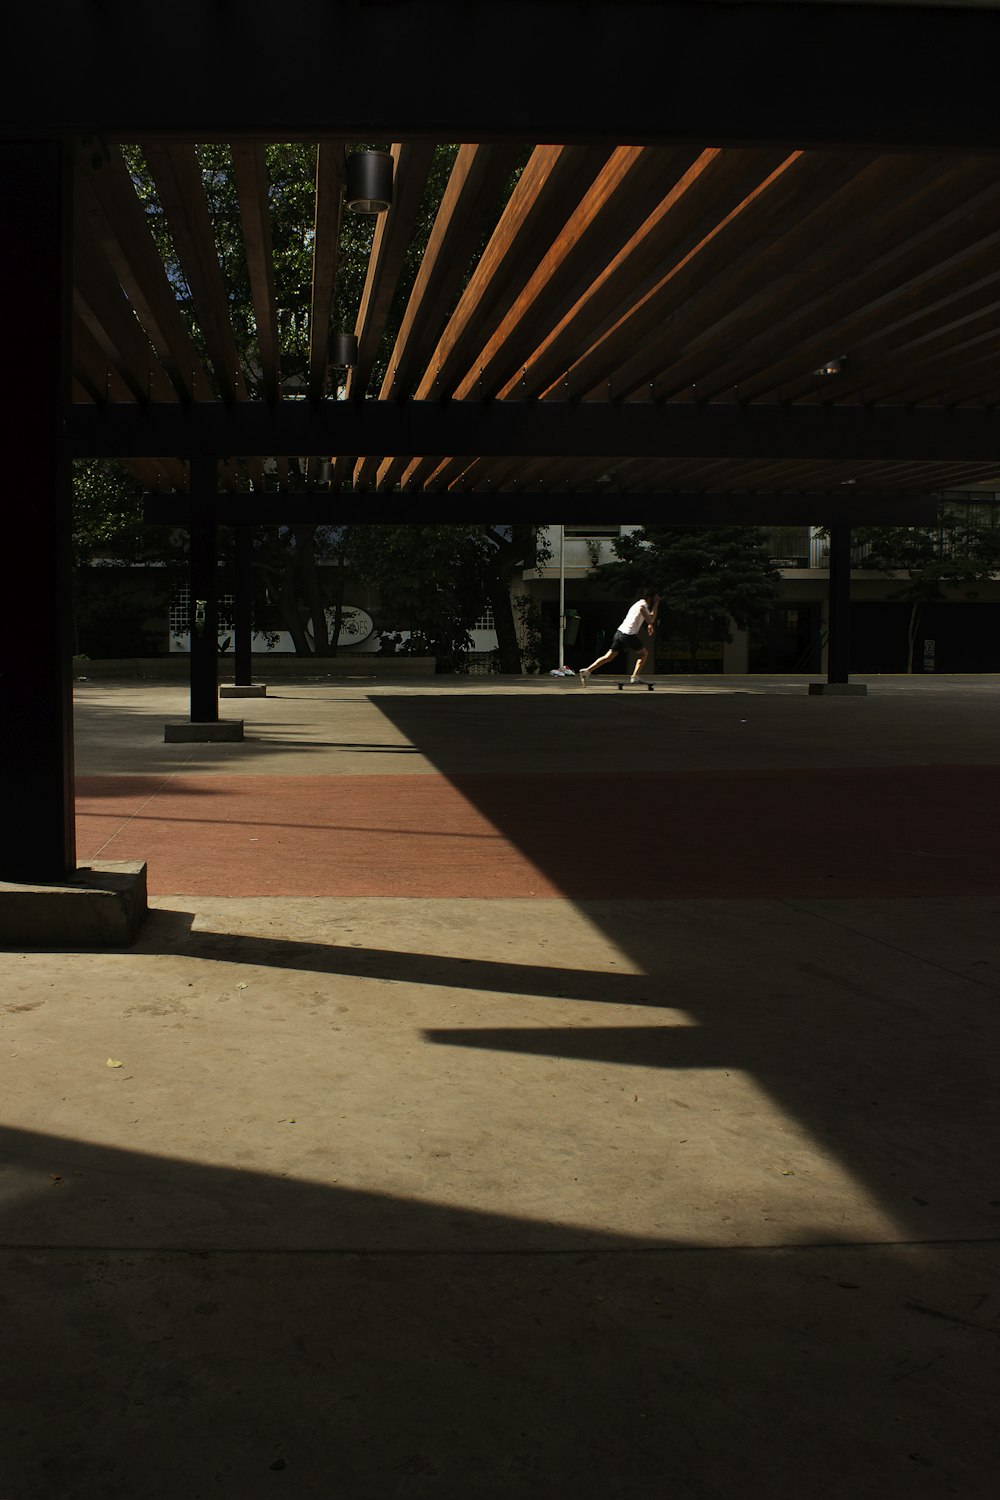 man skateboarding in open space